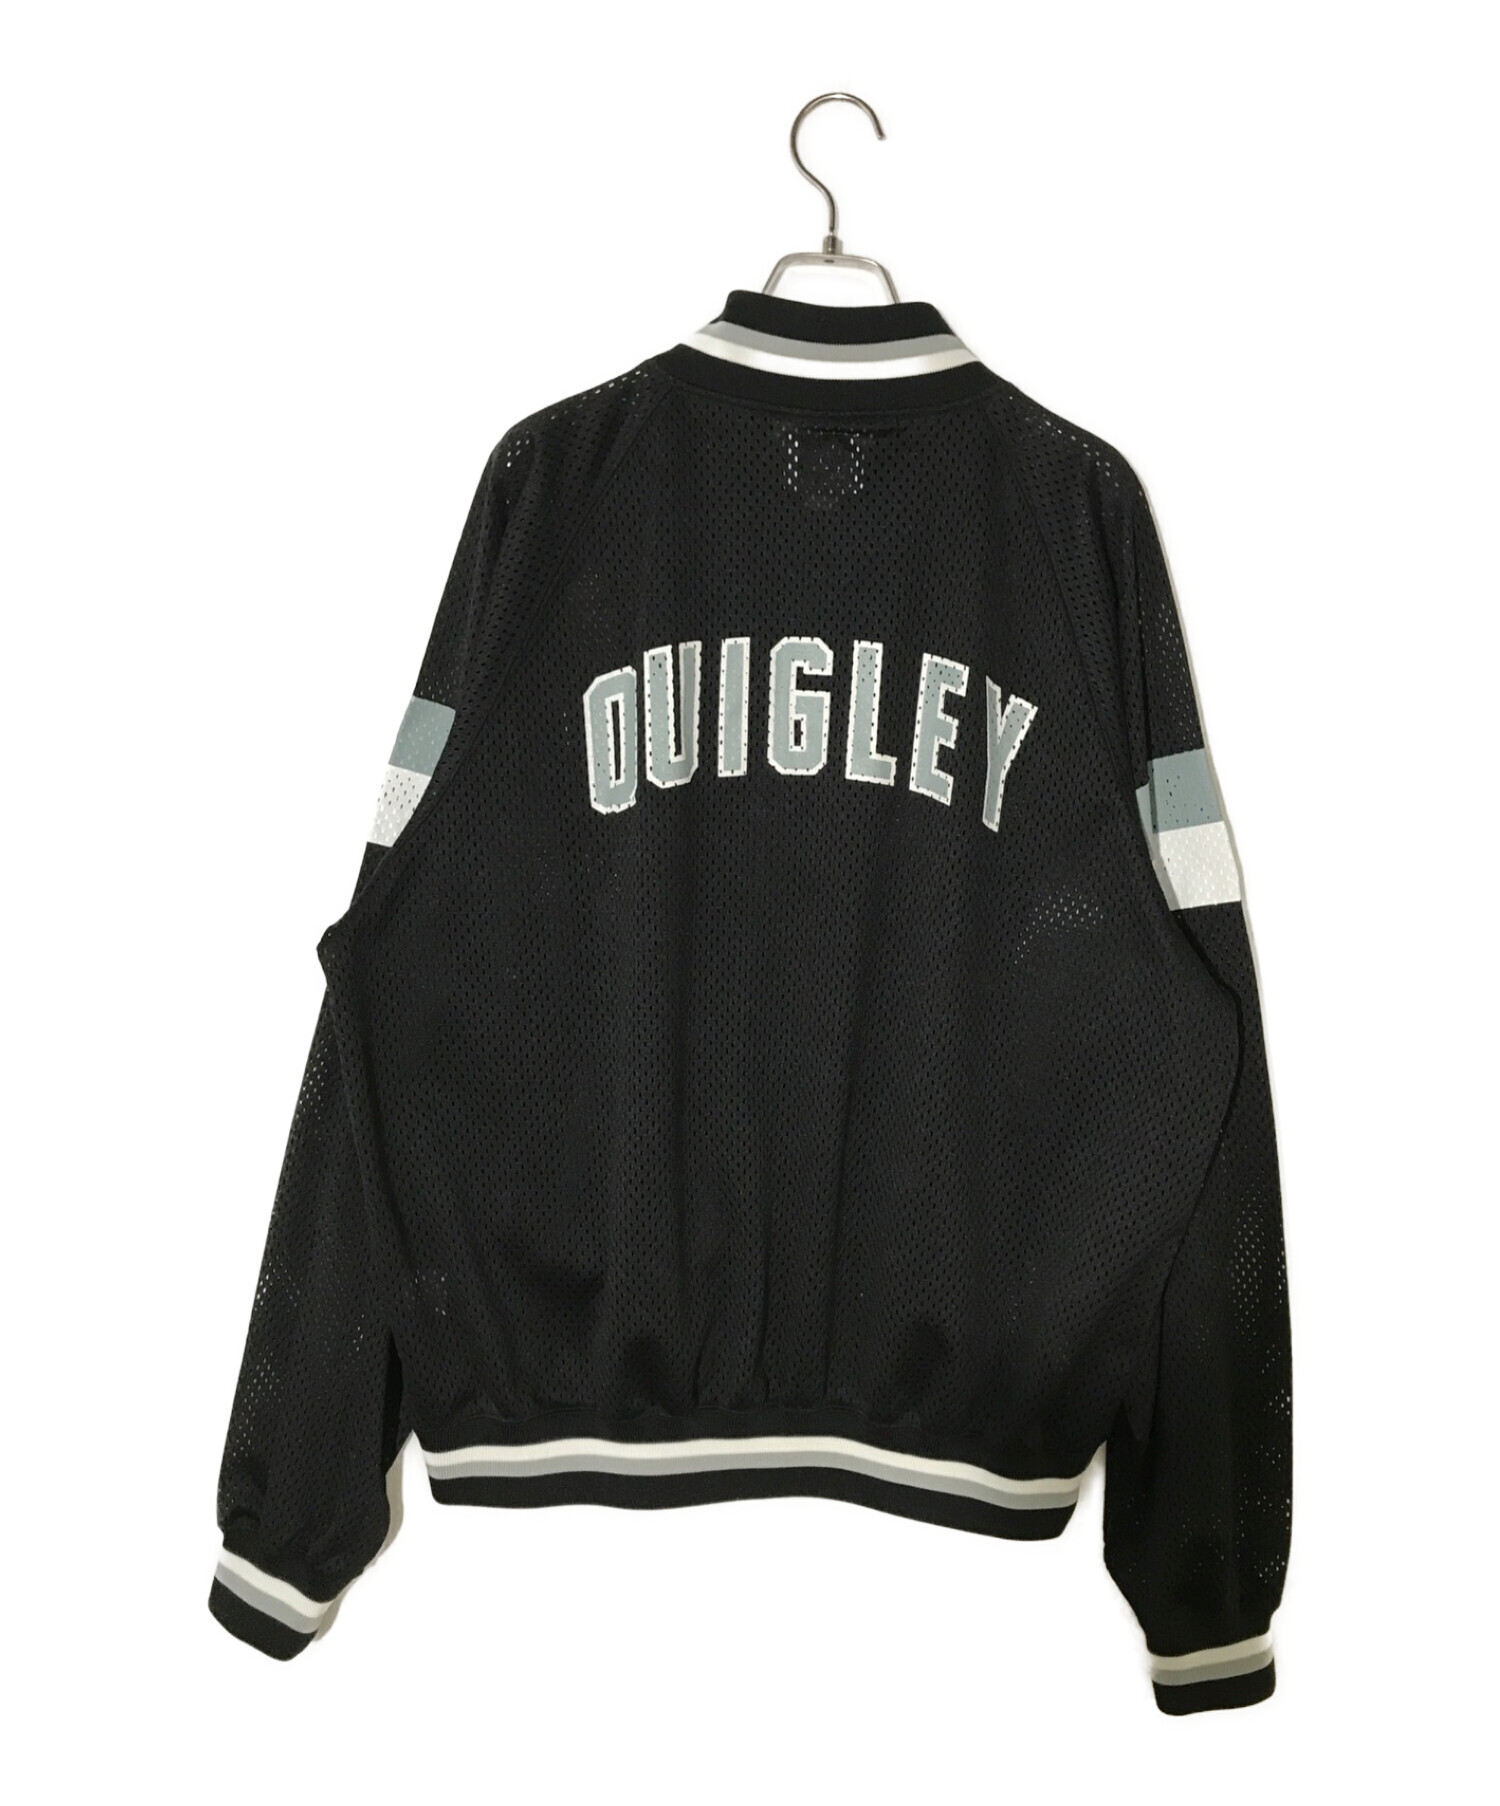 quigley メッシュバーシティジャケット